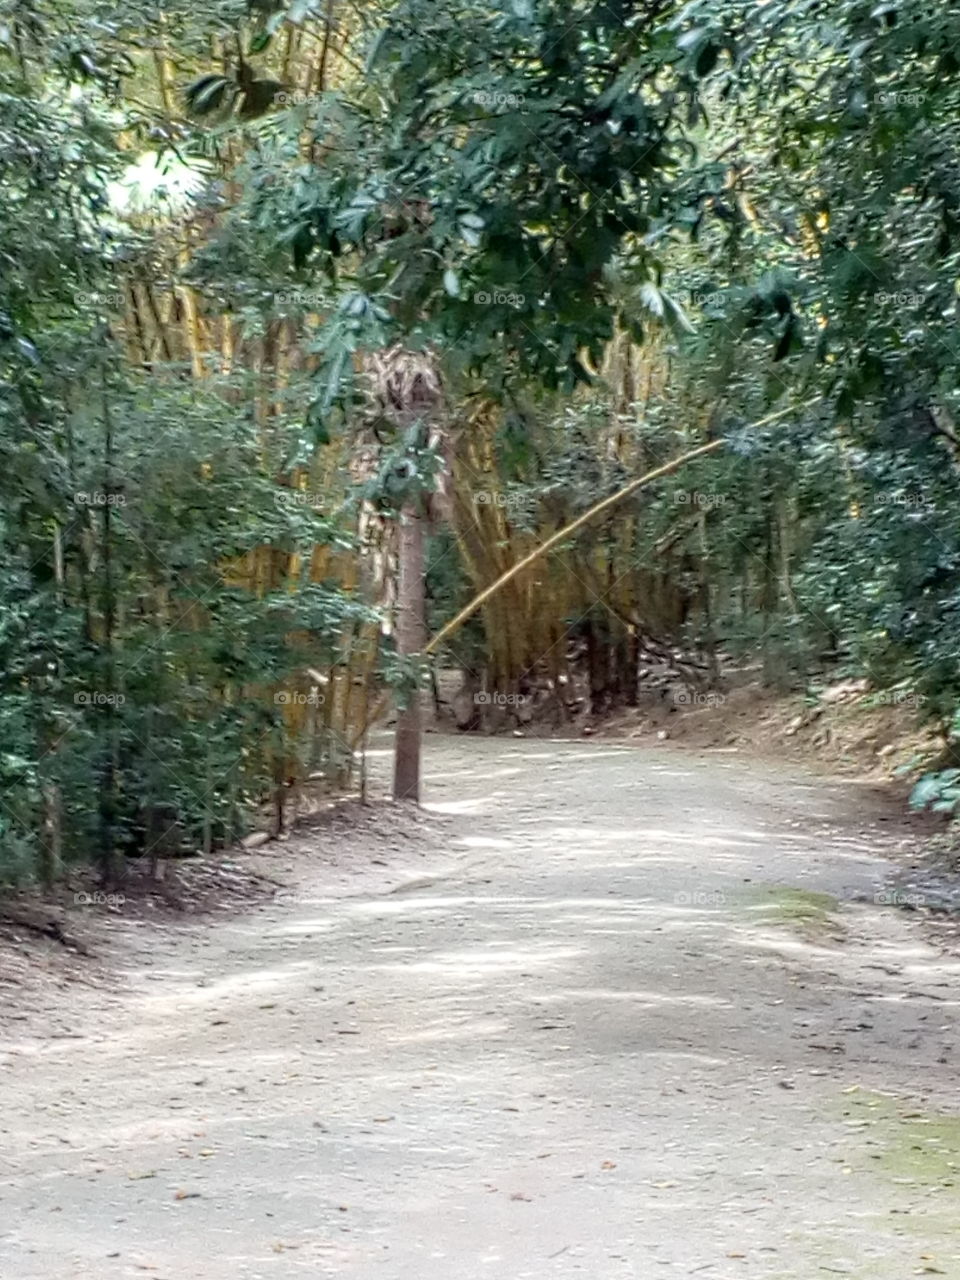 bambuzal